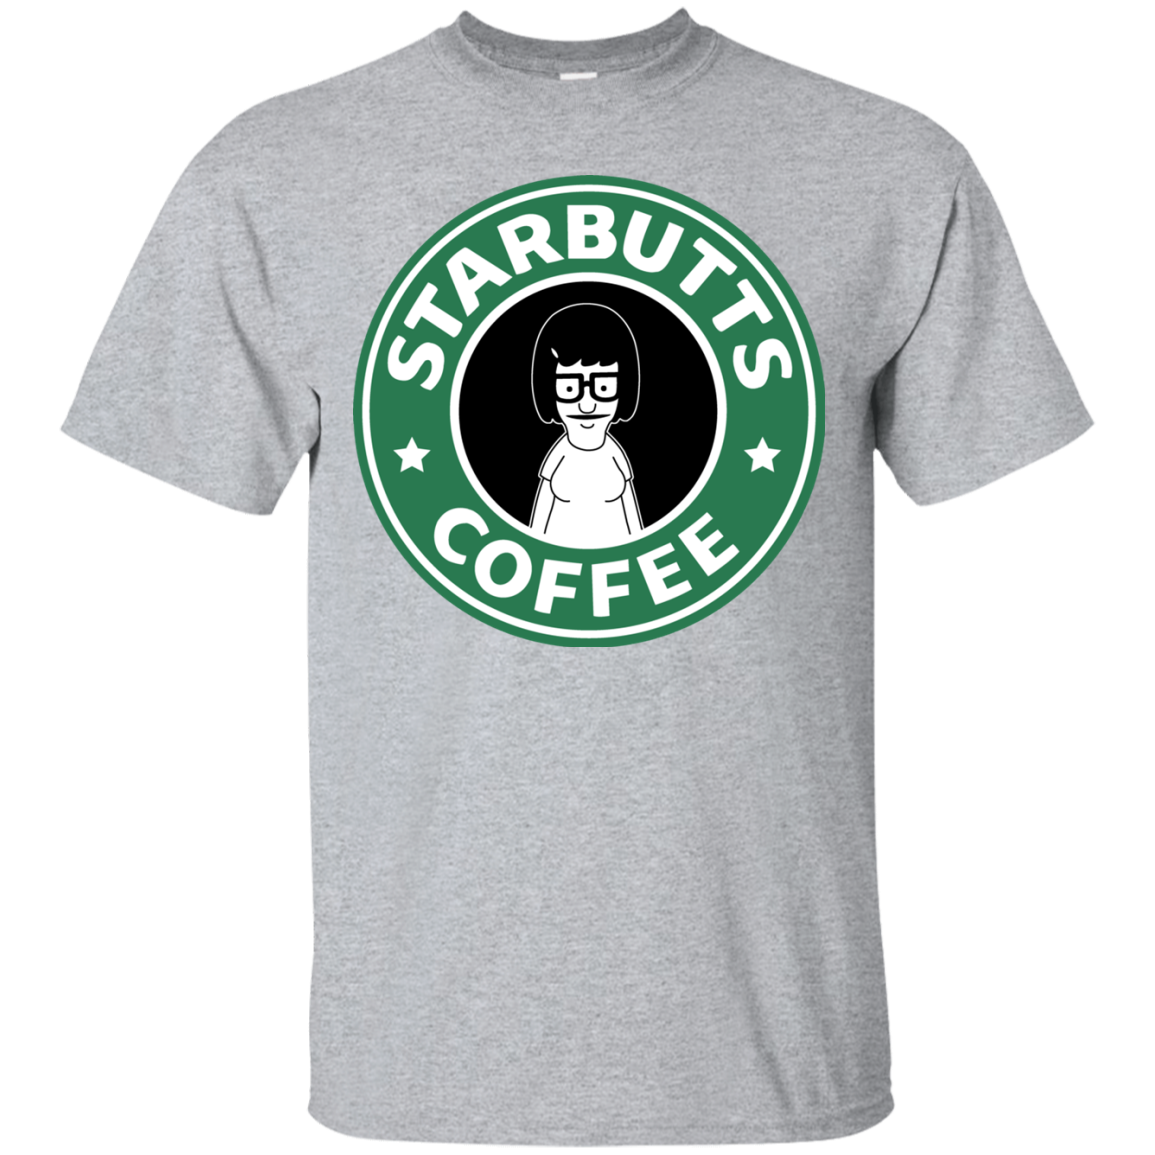 Starbutts T-Shirt